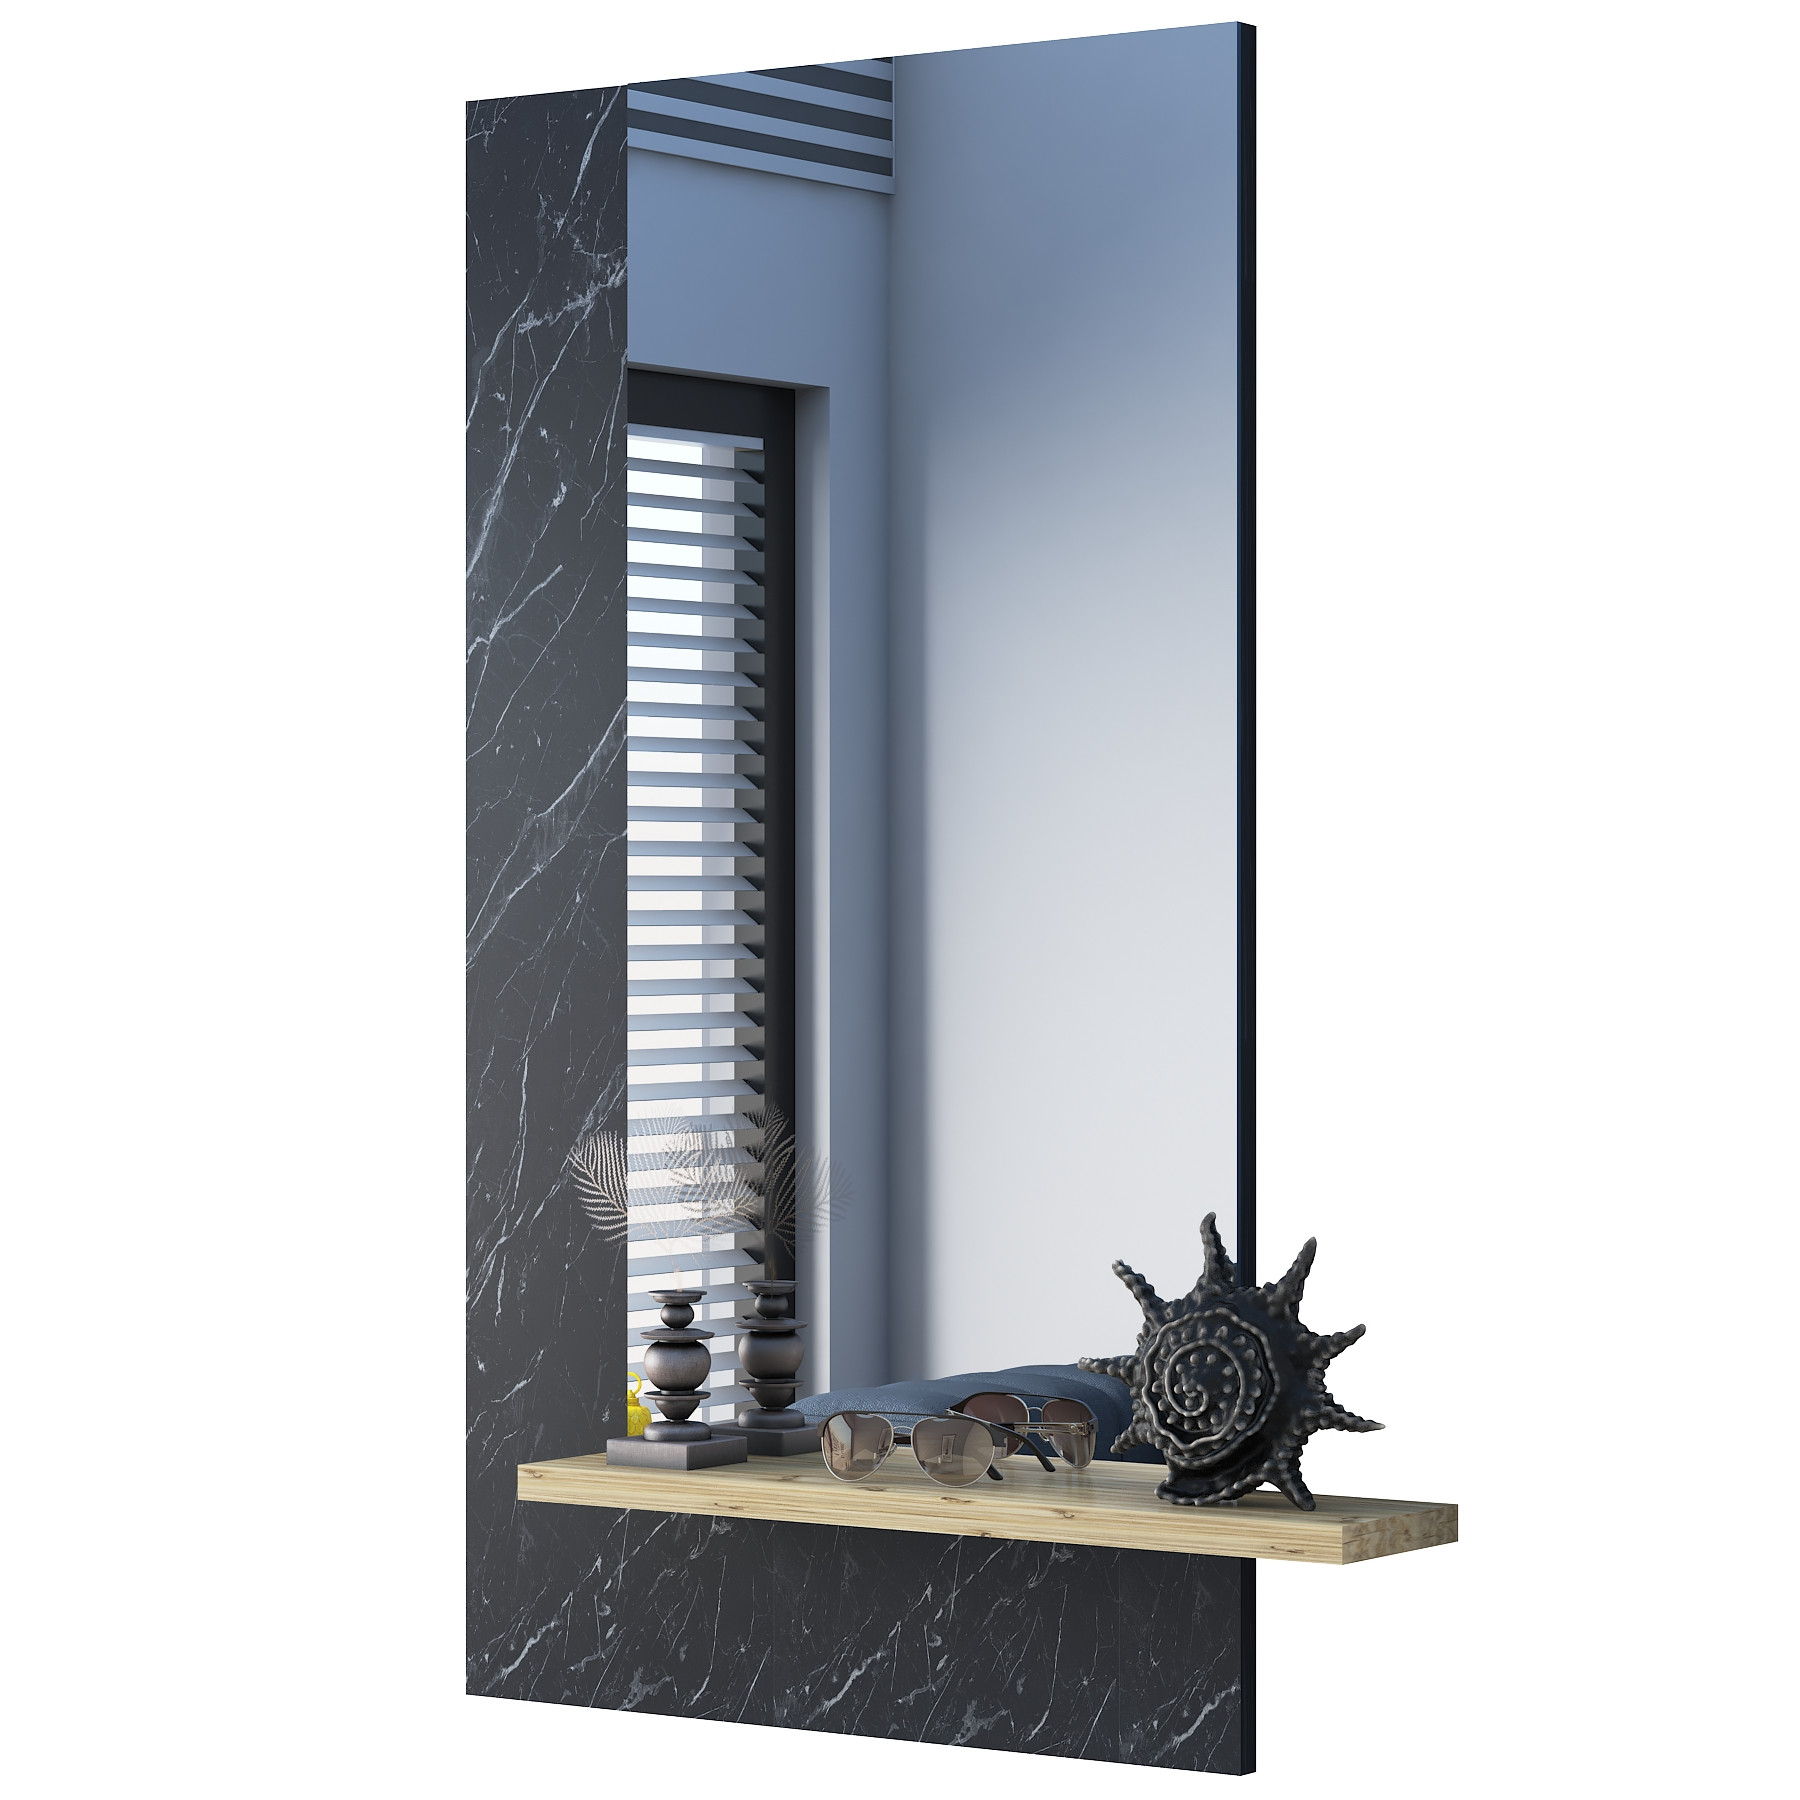 Specchio decorativo Granito nero Limpidus 60 x 120 x 2,2 cm Pannello in vetro melamina e il suo ripiano 65 x 13 x 1,8 cm Pannello in vetro quercia melamina